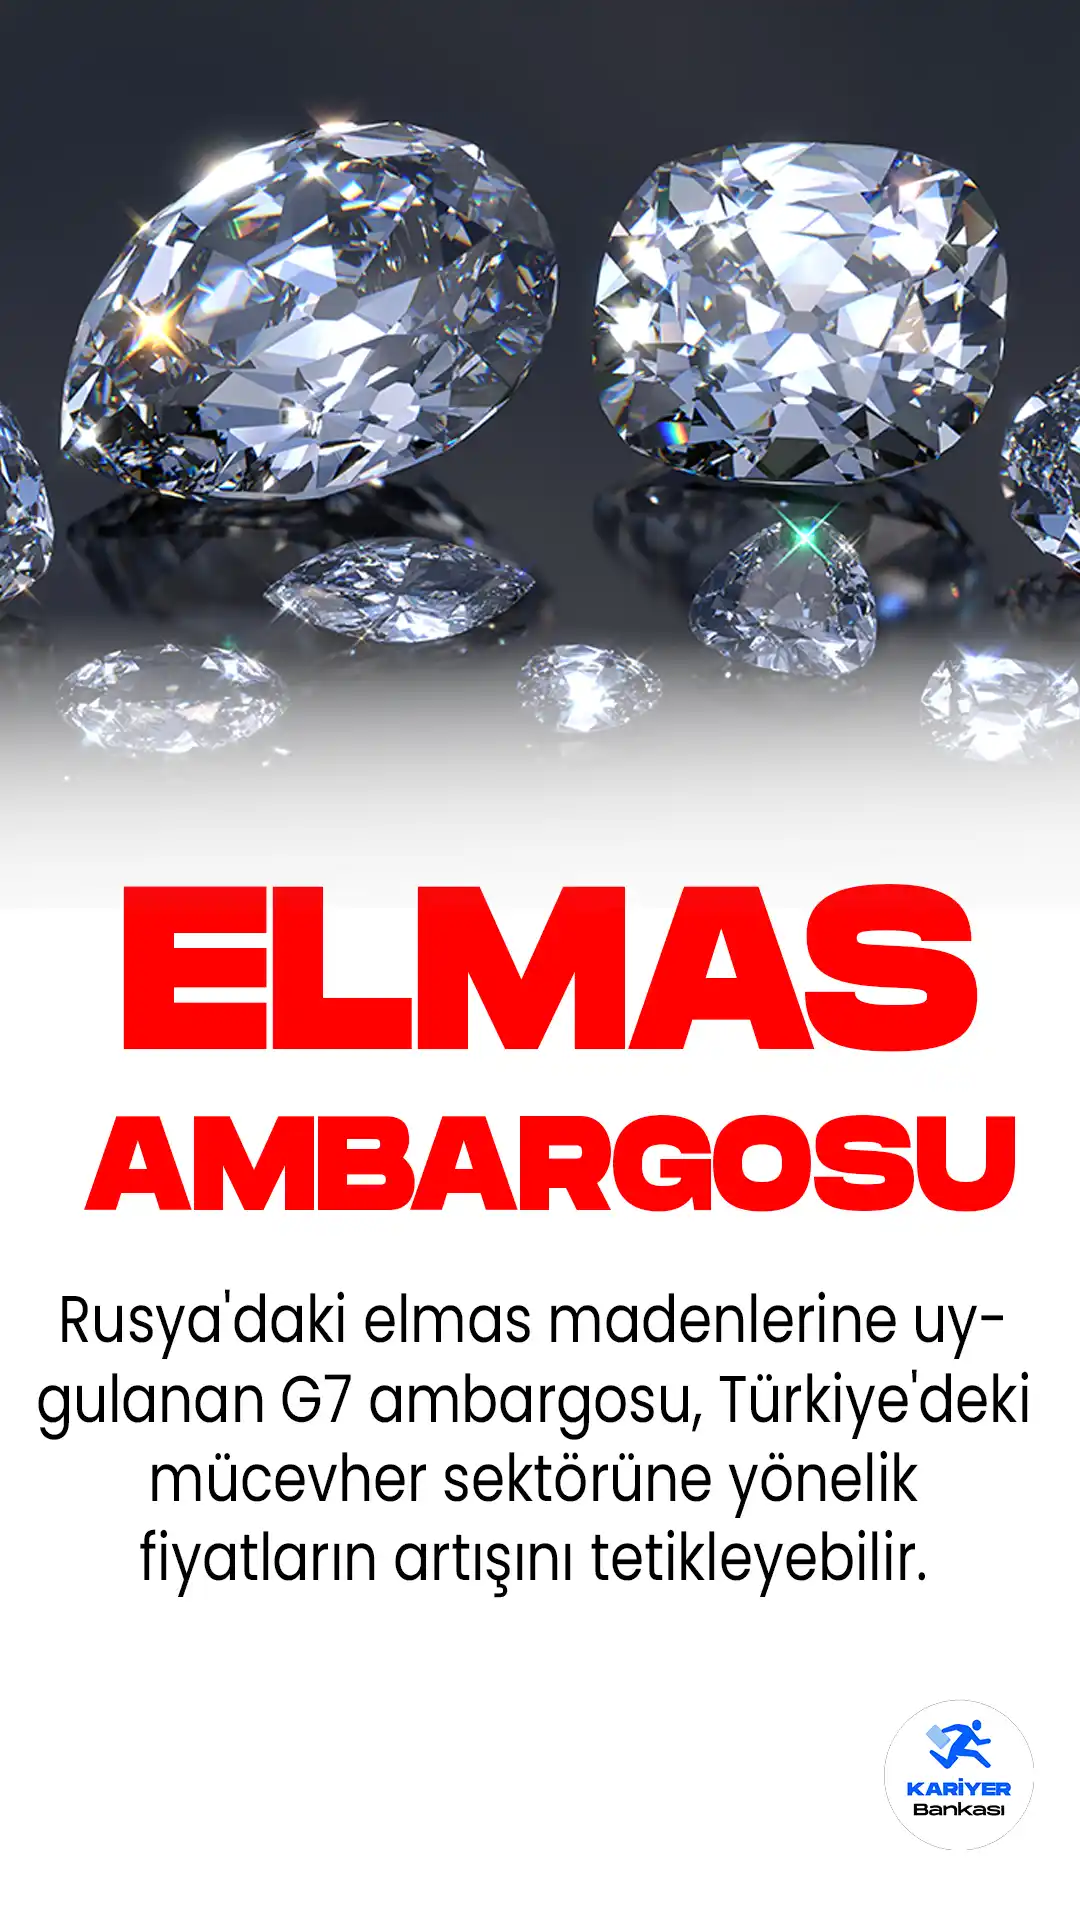 Rusya'daki elmas madenlerine uygulanan G7 ambargosu, Türkiye'deki mücevher sektörüne yönelik fiyatların artışını tetikleyebilir.